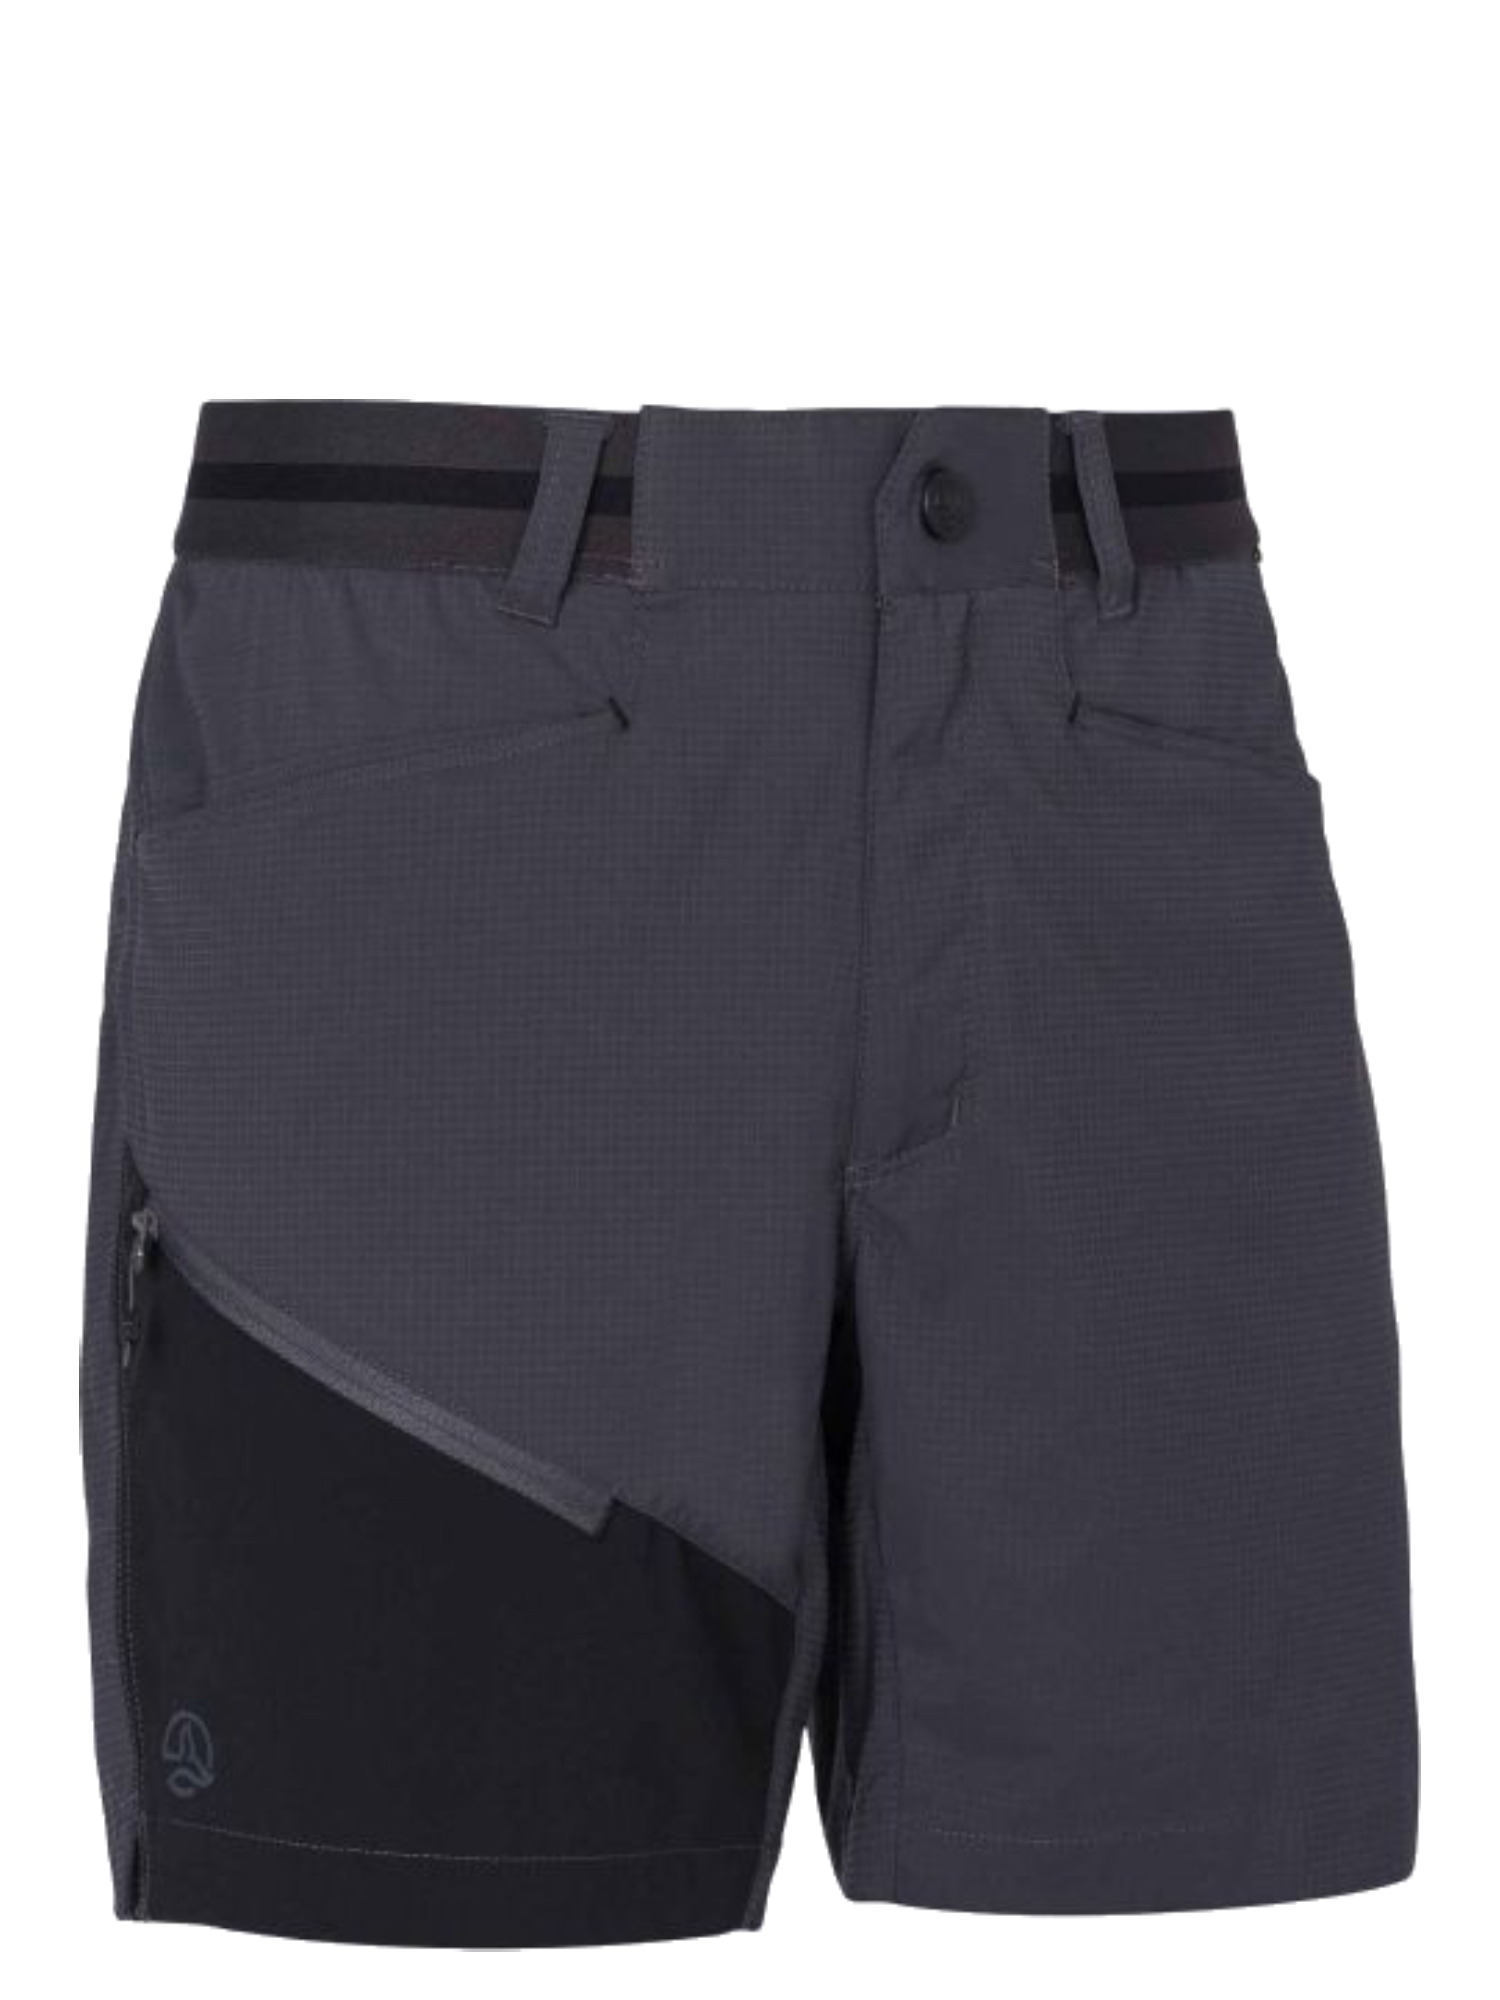 Спортивные шорты мужские Ternua Elid Sht M серые XL